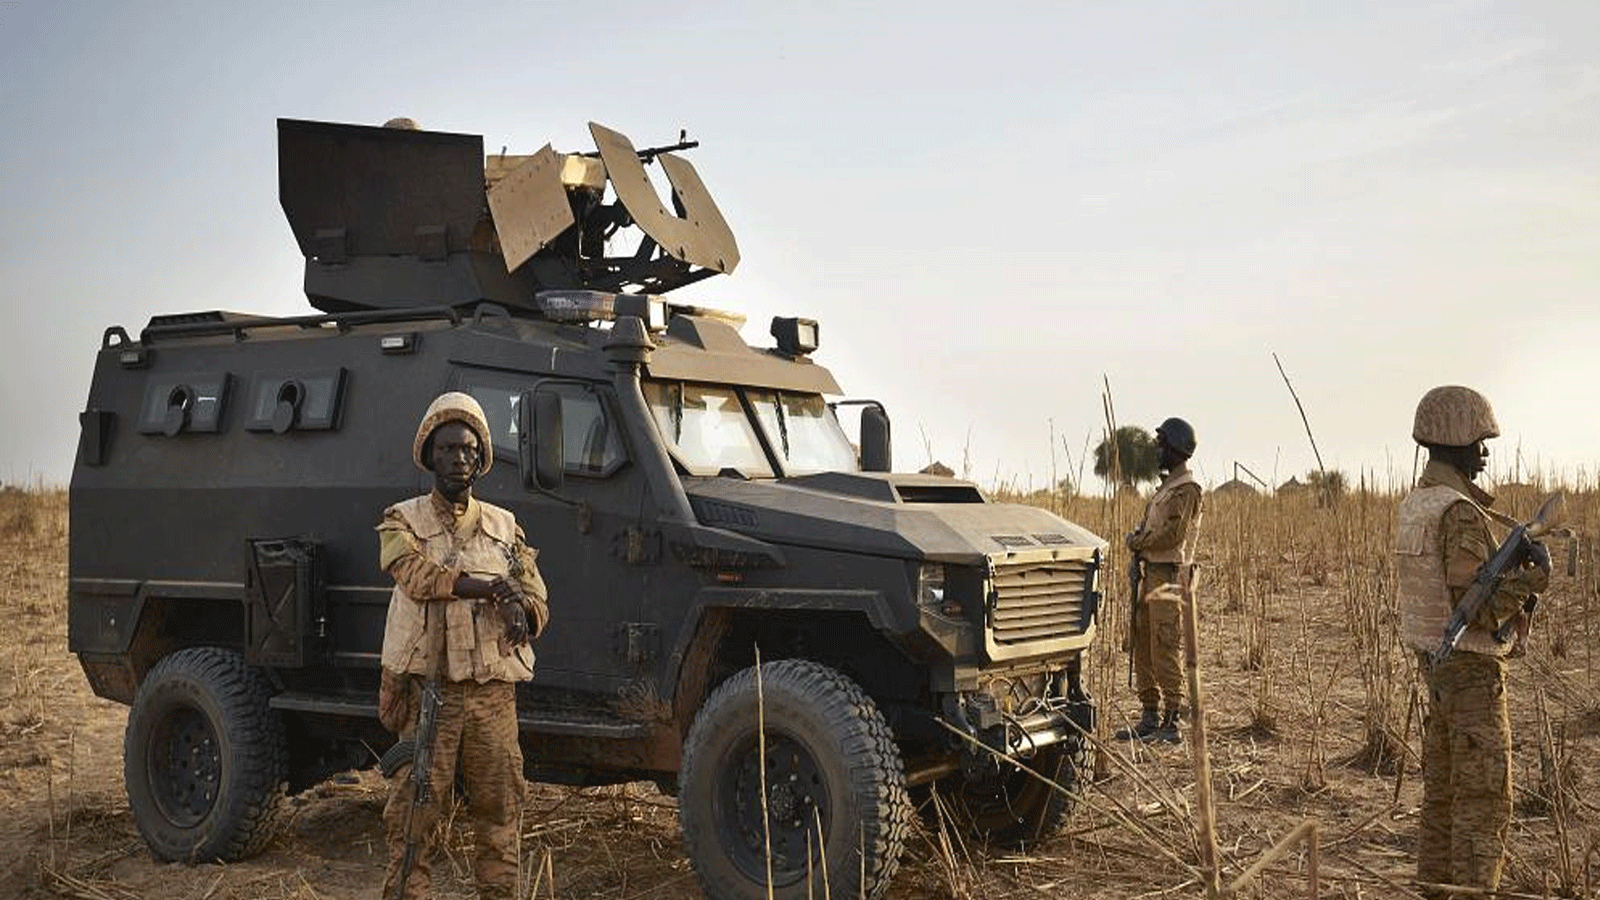 مجموعة من جنود جيش بوركينا فاسو تقوم بدوريات في منطقة ريفية خلال عملية مشتركة في منطقة سوم على طول الحدود مع مالي في 9 تشرين الثاني\ نوفمبر 2019.